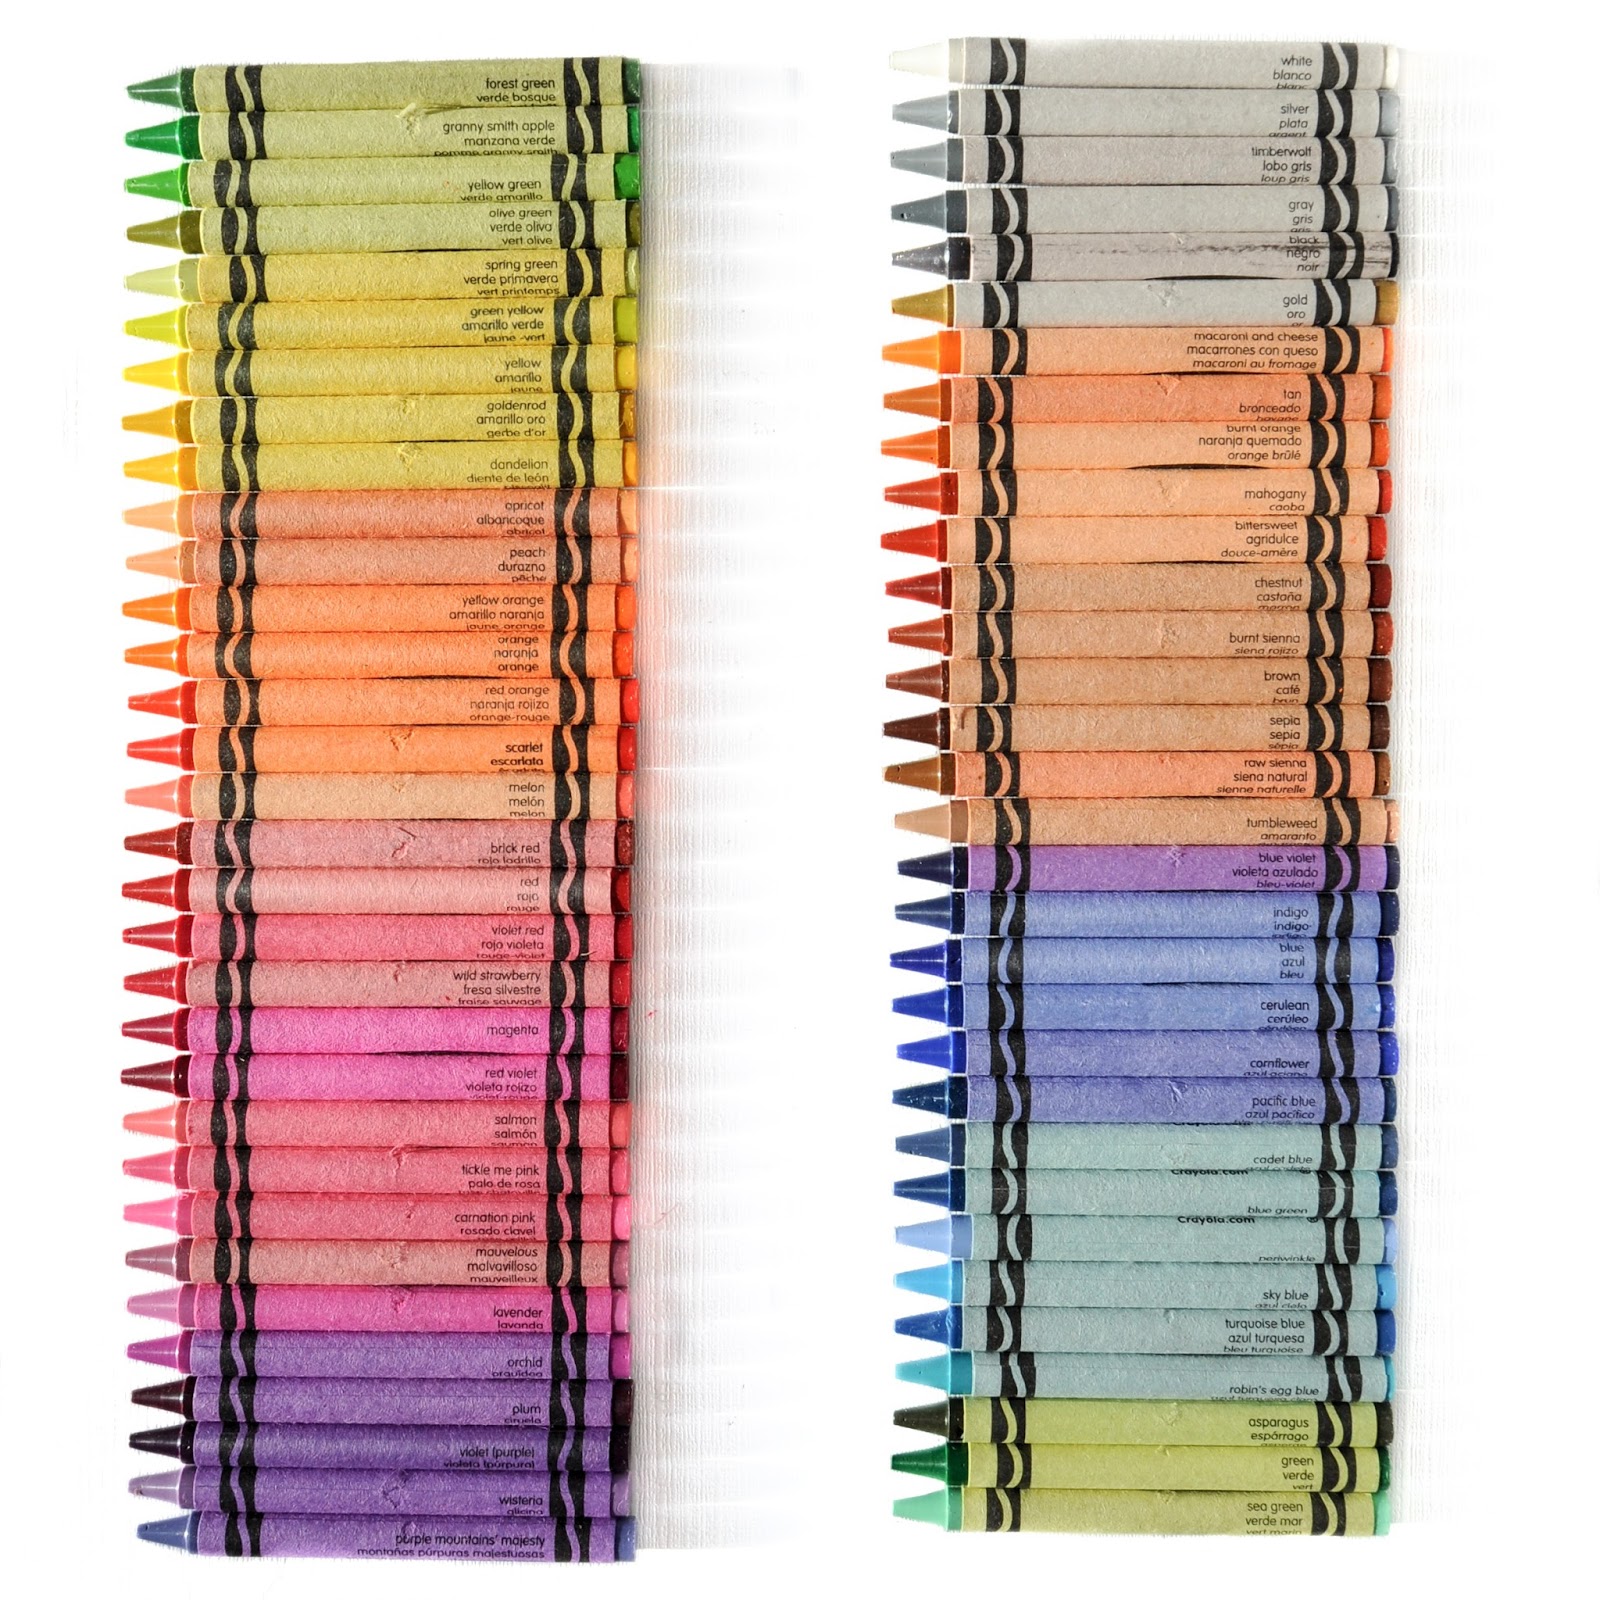 Crayola Crayons Box